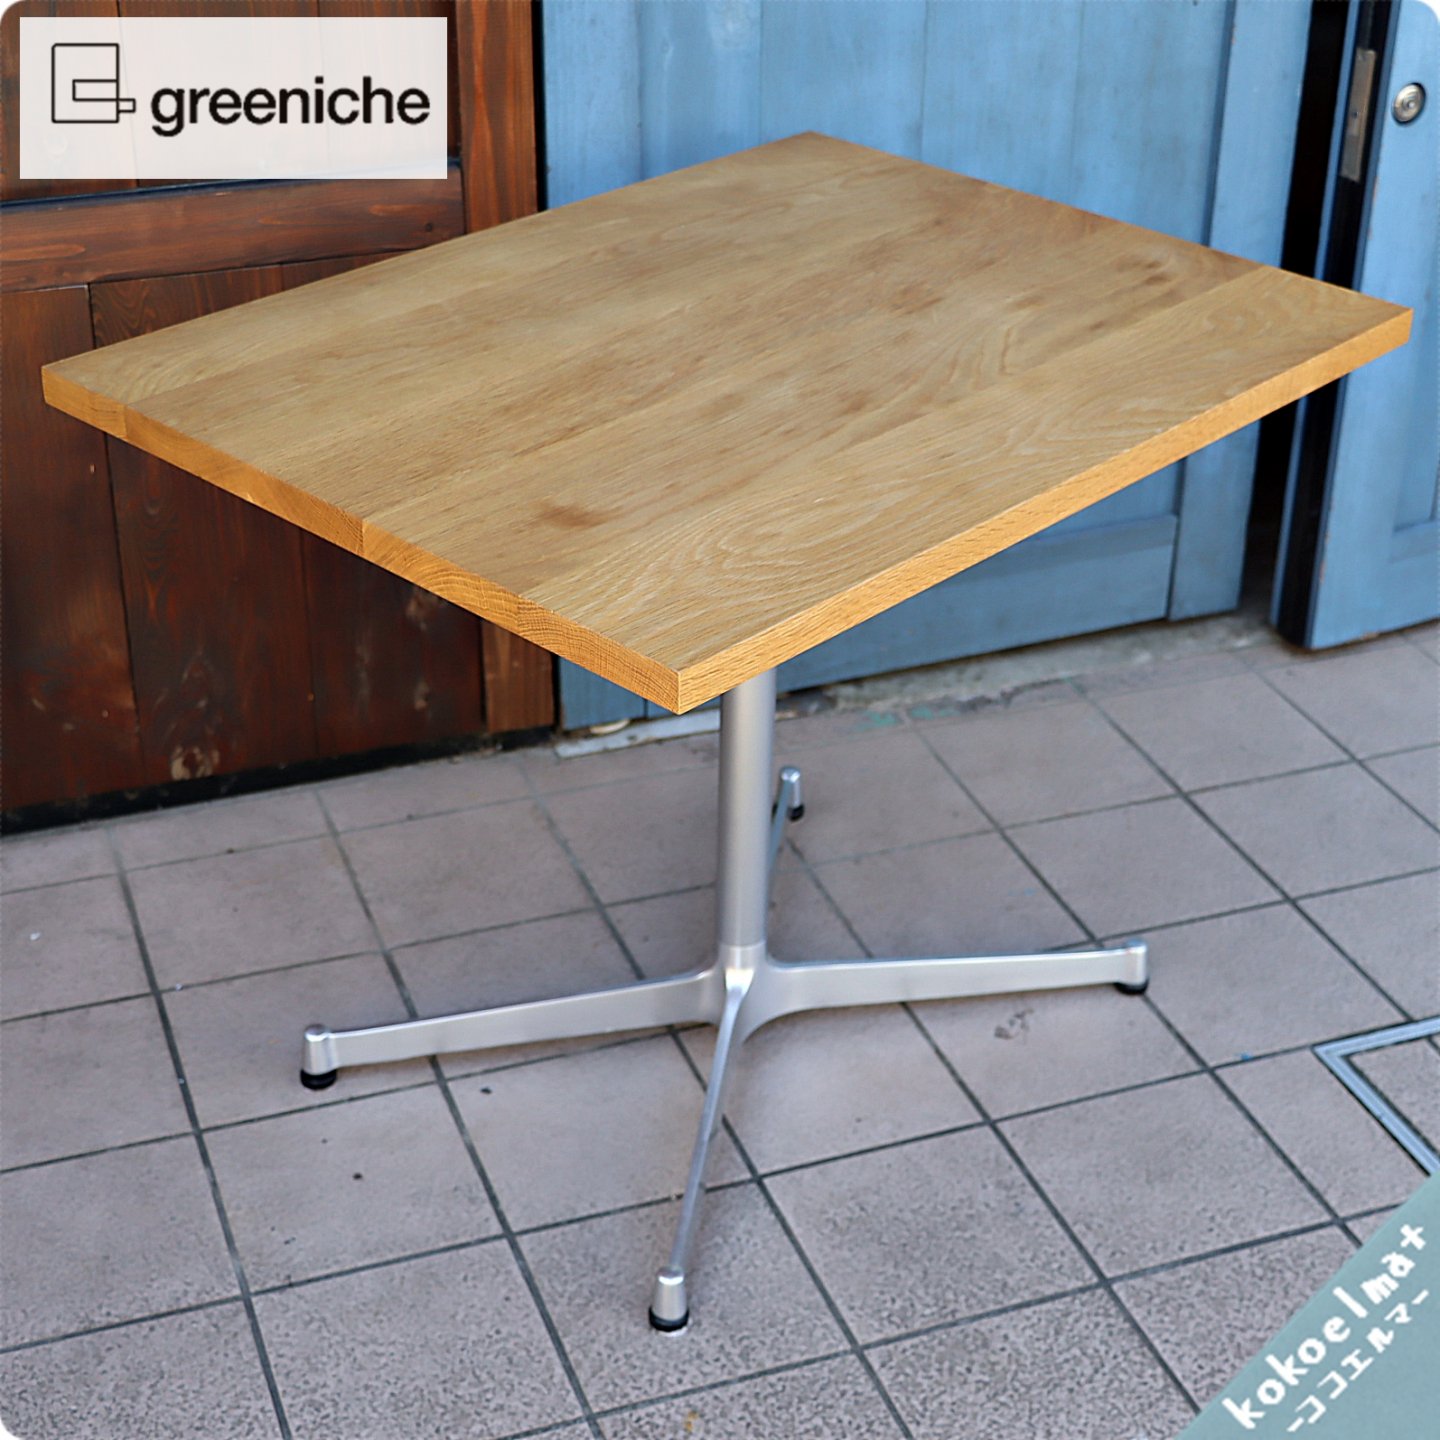 greeniche(グリニッチ) オーク無垢材 カフェテーブル。/ソファーにも 